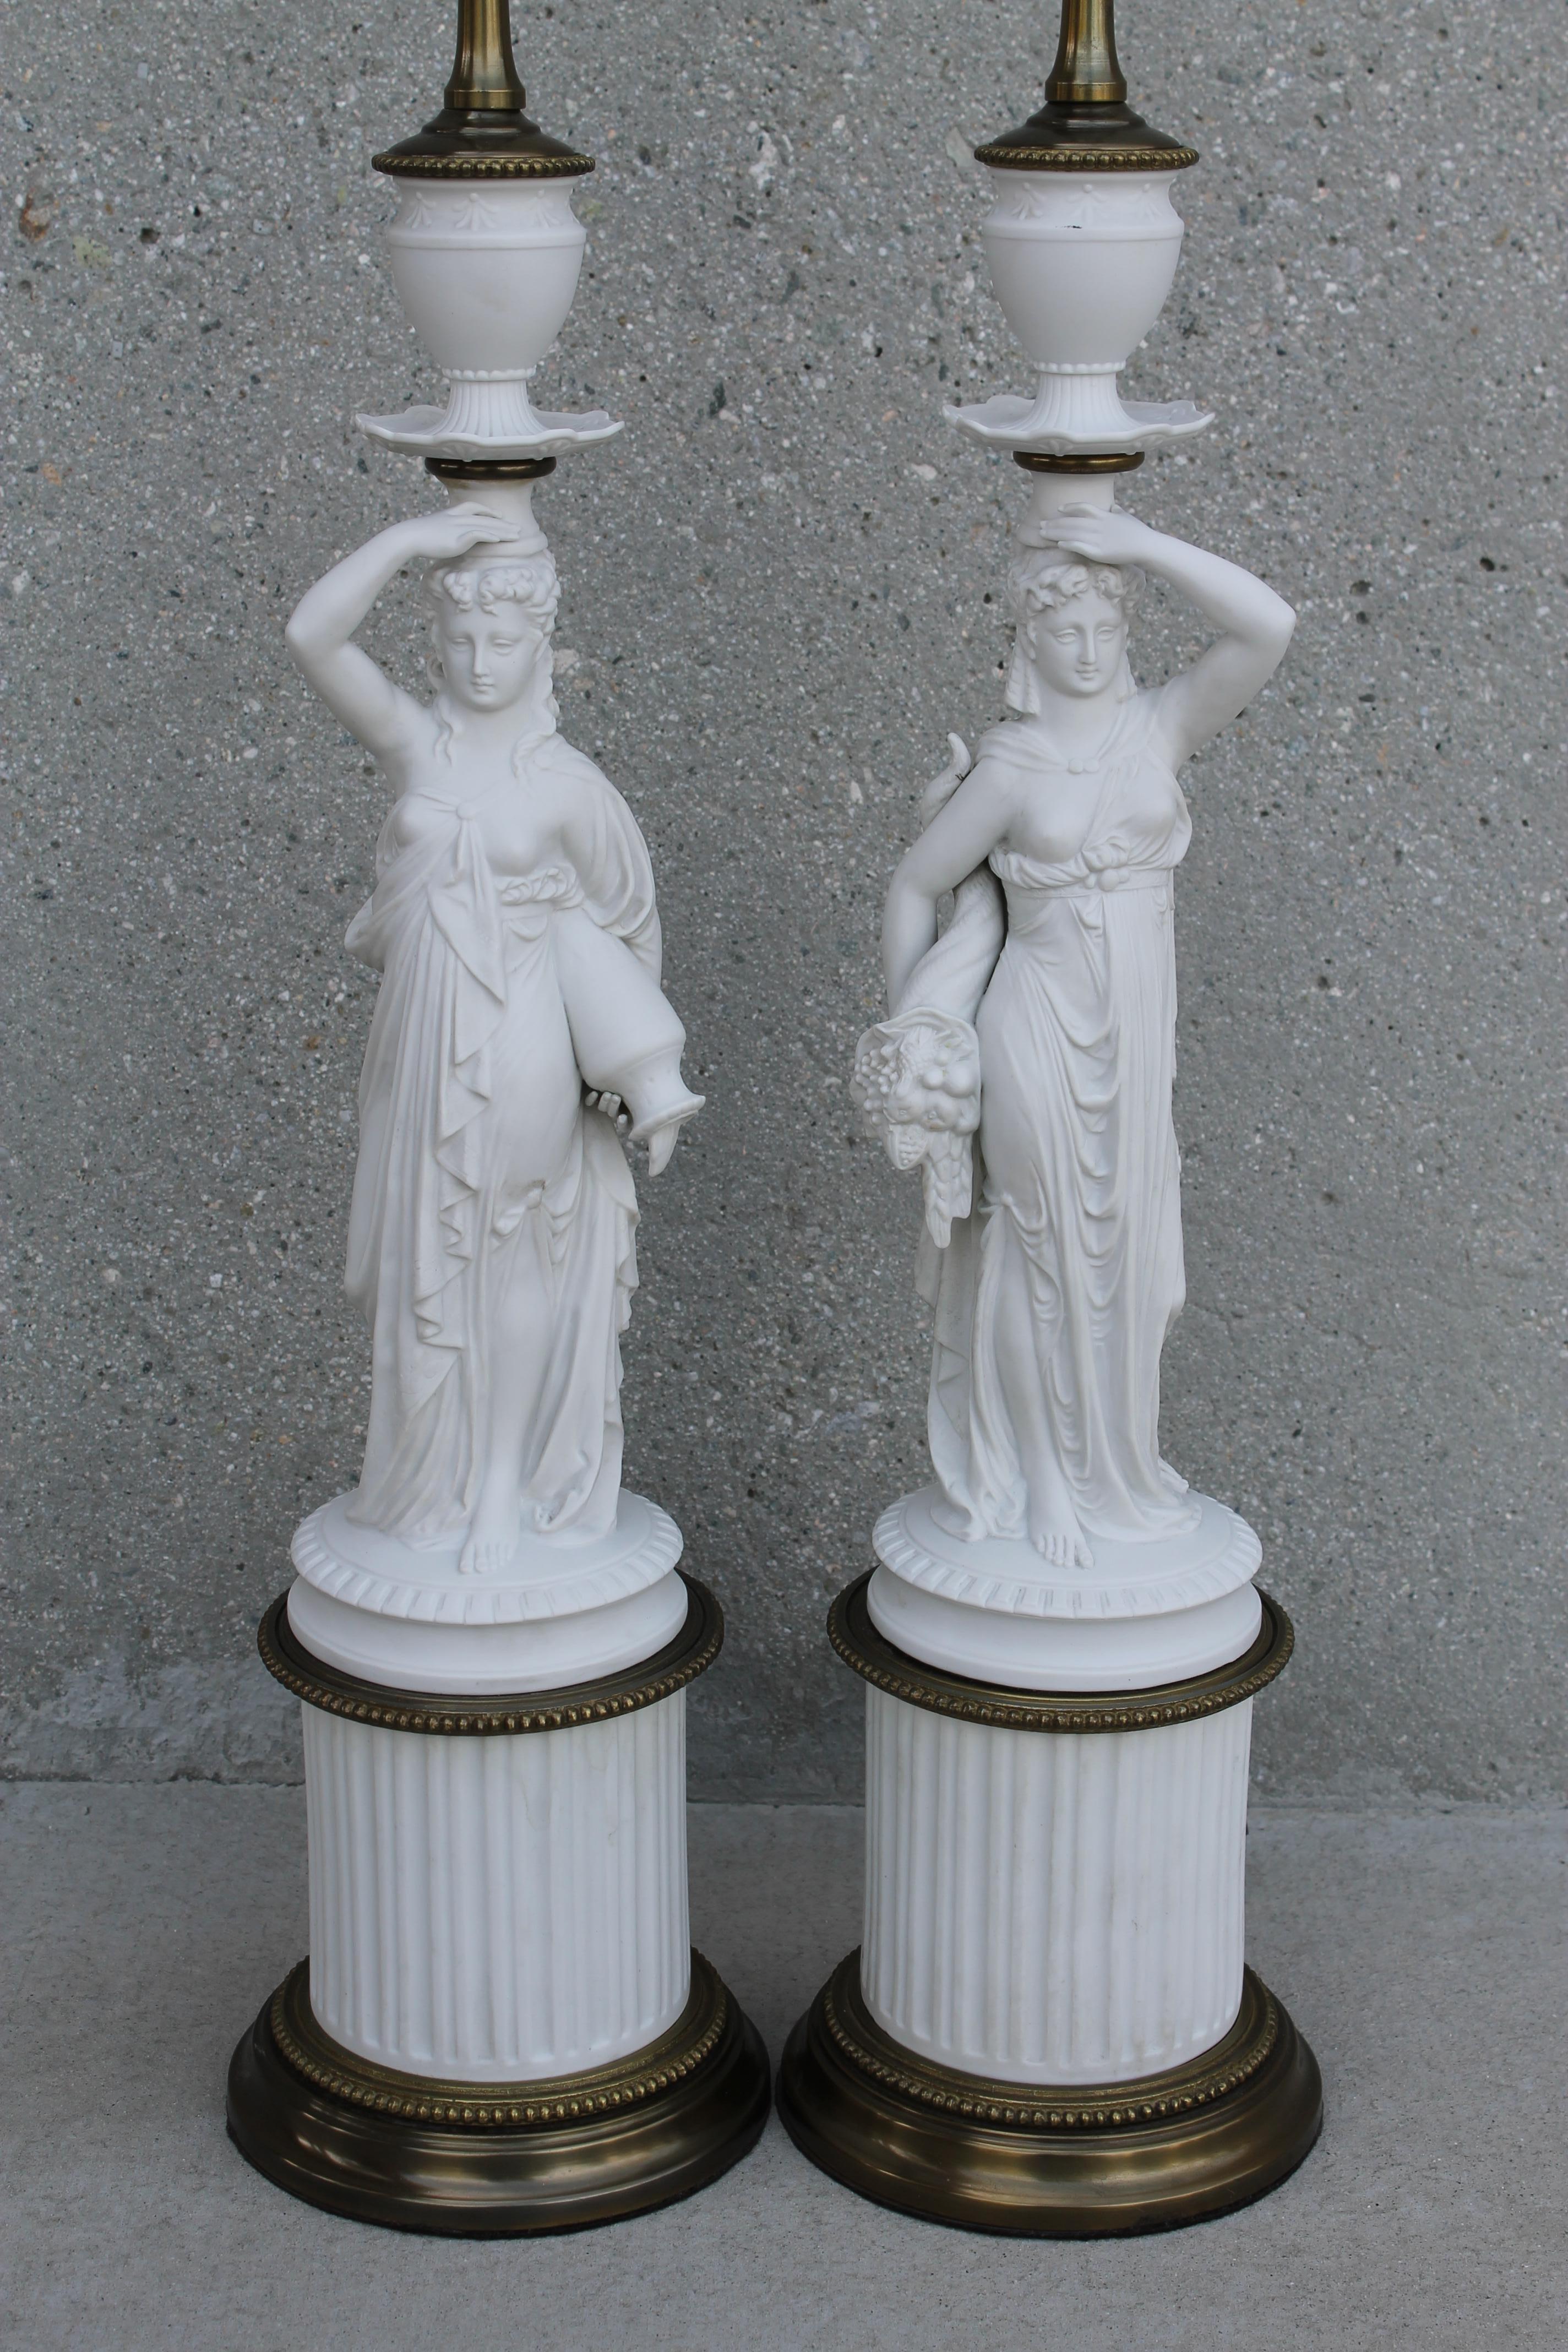 Paire de lampes de déesse grecque en porcelaine ou en porcelaine de Paros (type de porcelaine biscuitée imitant le marbre). L'une représente Déméter, la déesse tenant une corne d'abondance, et l'autre, Iris, tenant une cruche d'eau. Déméter, la